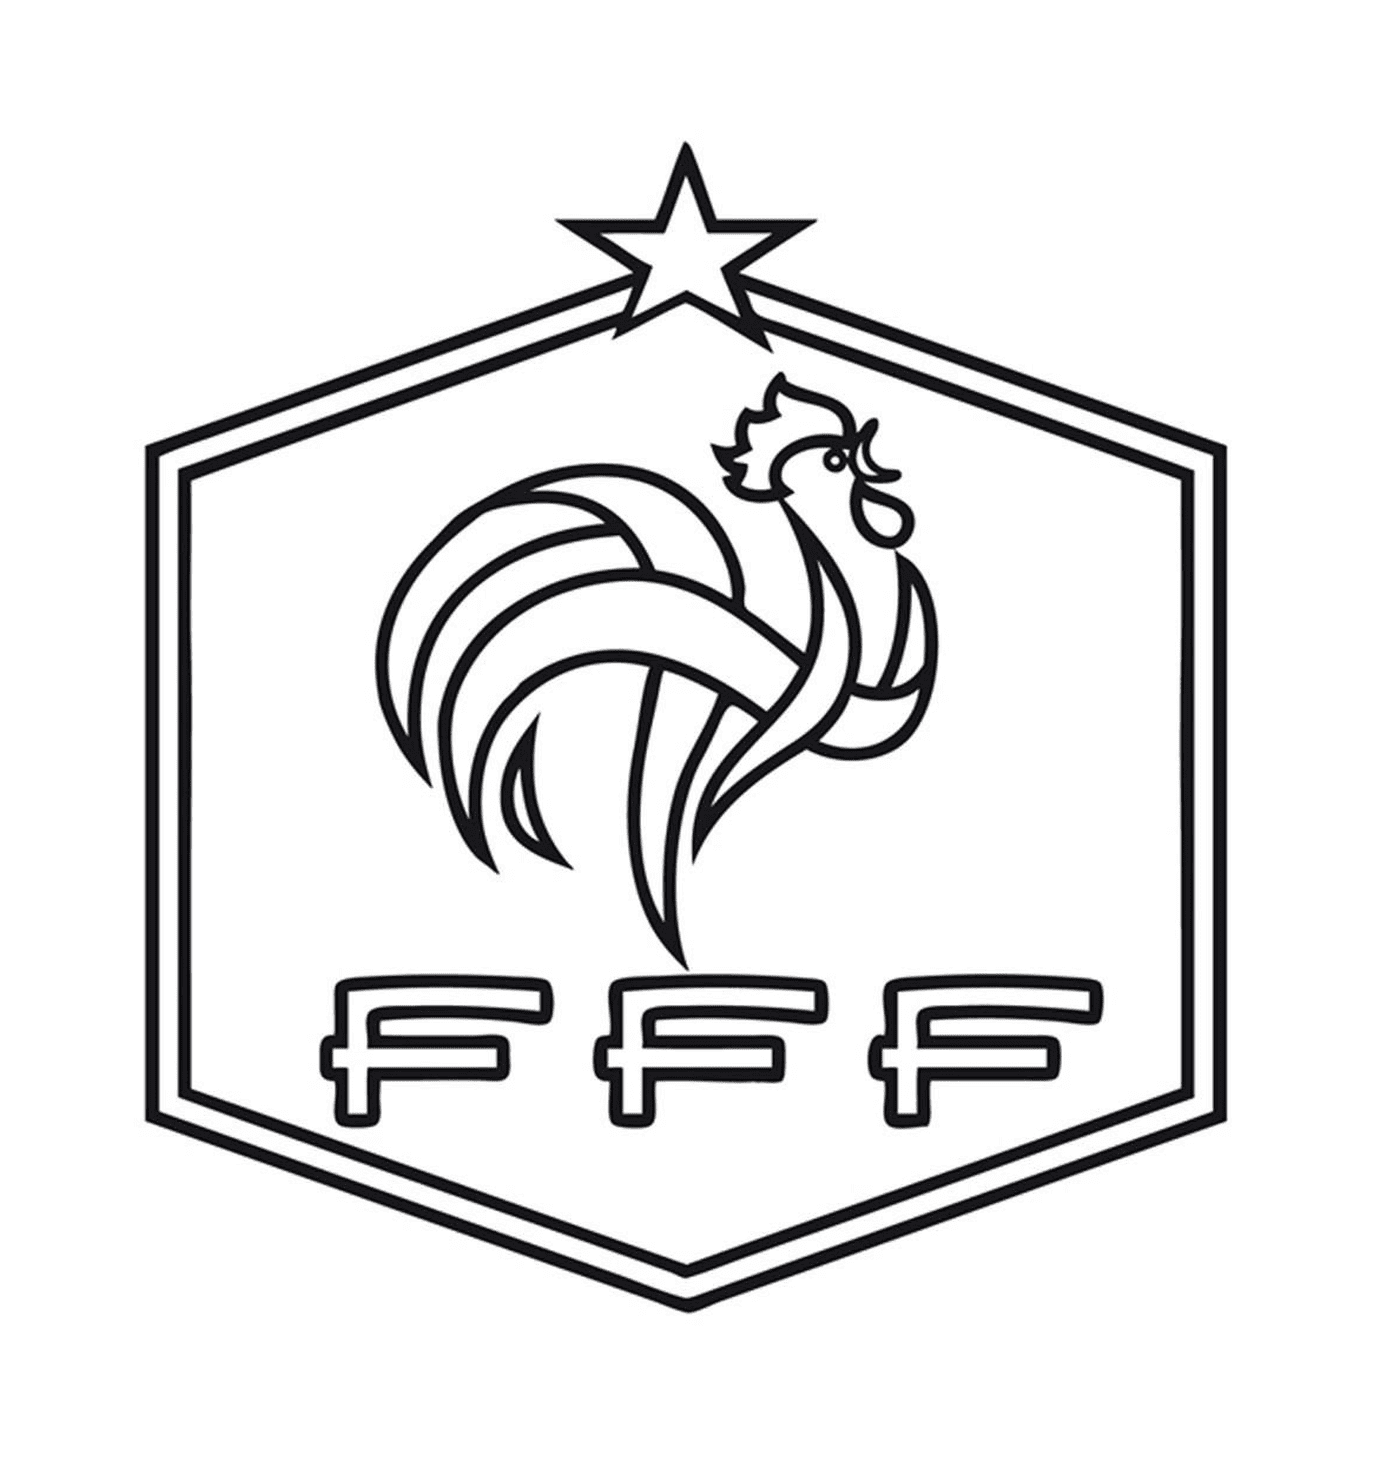  Il gallo iconico dell'FFF 